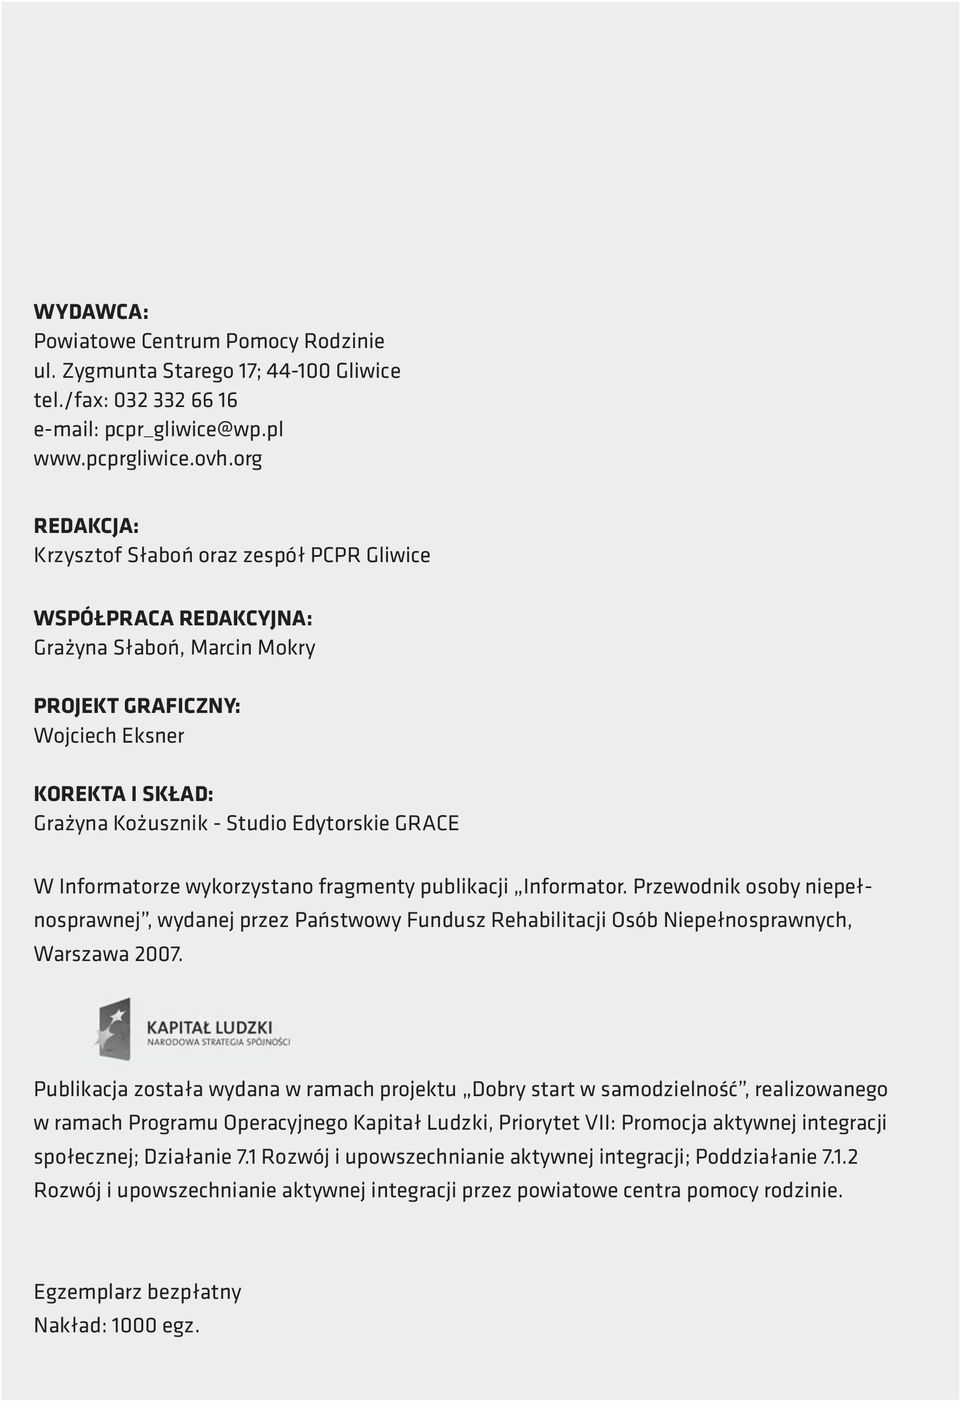 GRACE W Informatorze wykorzystano fragmenty publikacji Informator. Przewodnik osoby niepełnosprawnej, wydanej przez Państwowy Fundusz Rehabilitacji Osób Niepełnosprawnych, Warszawa 2007.